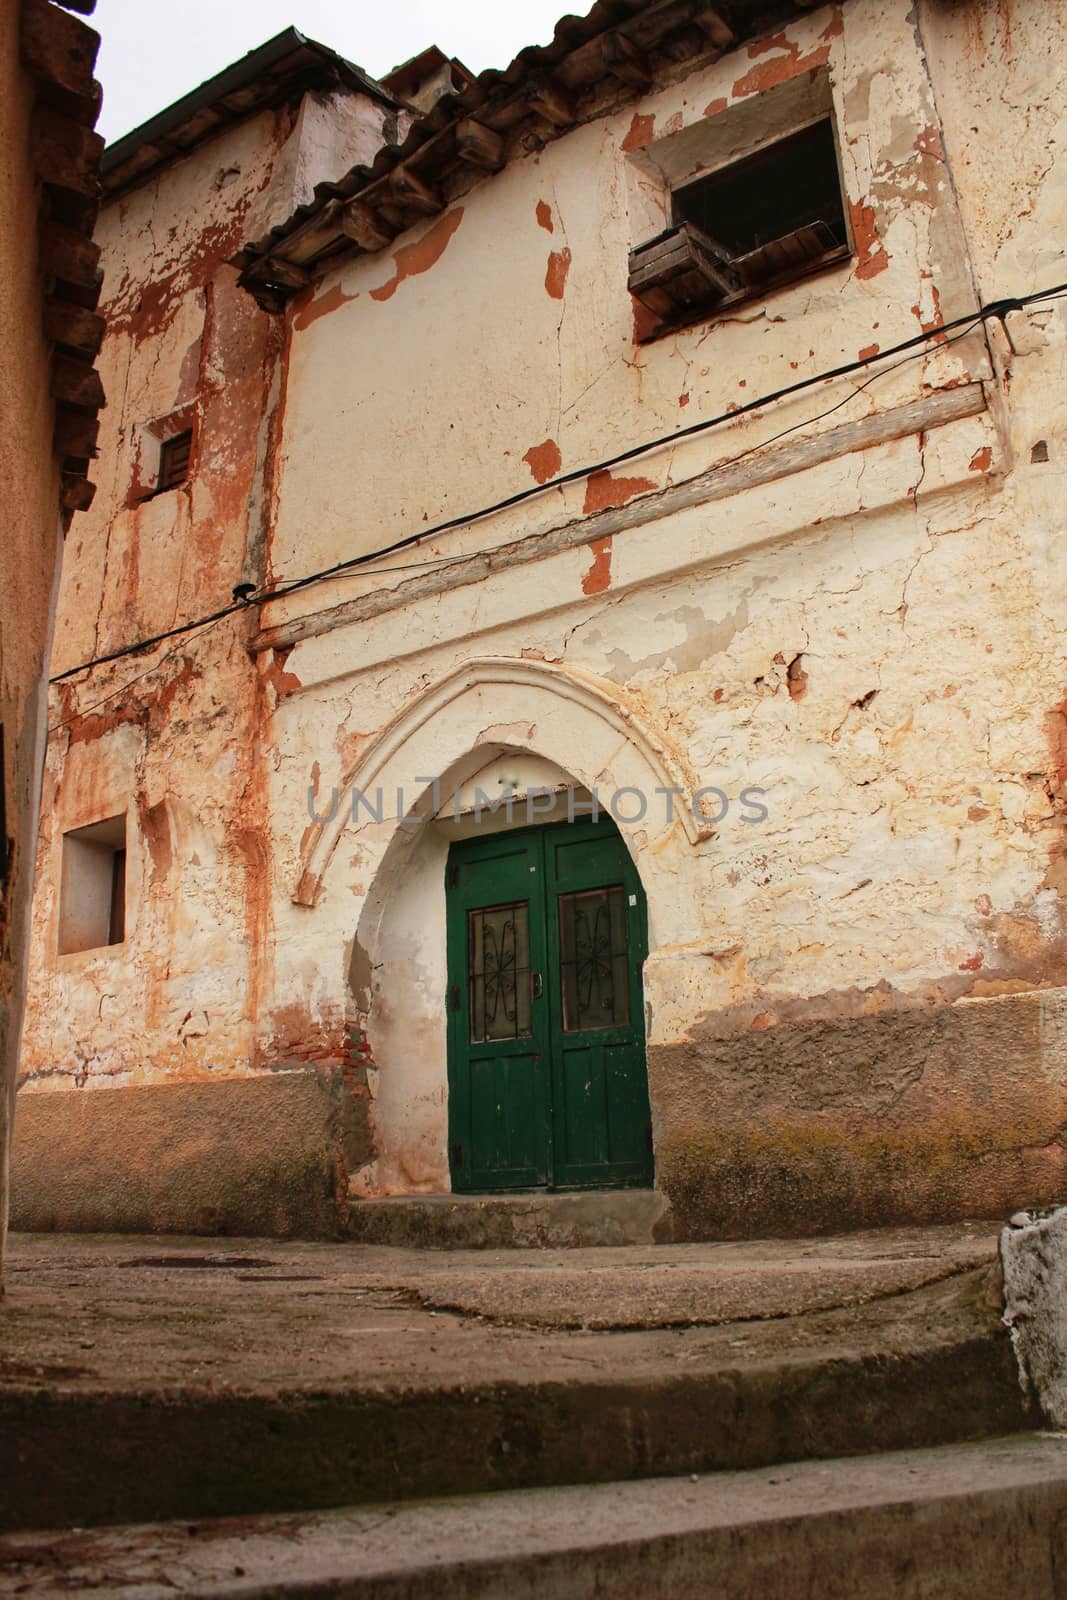 Old abandoned house facade with green wooden door in Alcaraz, Spain